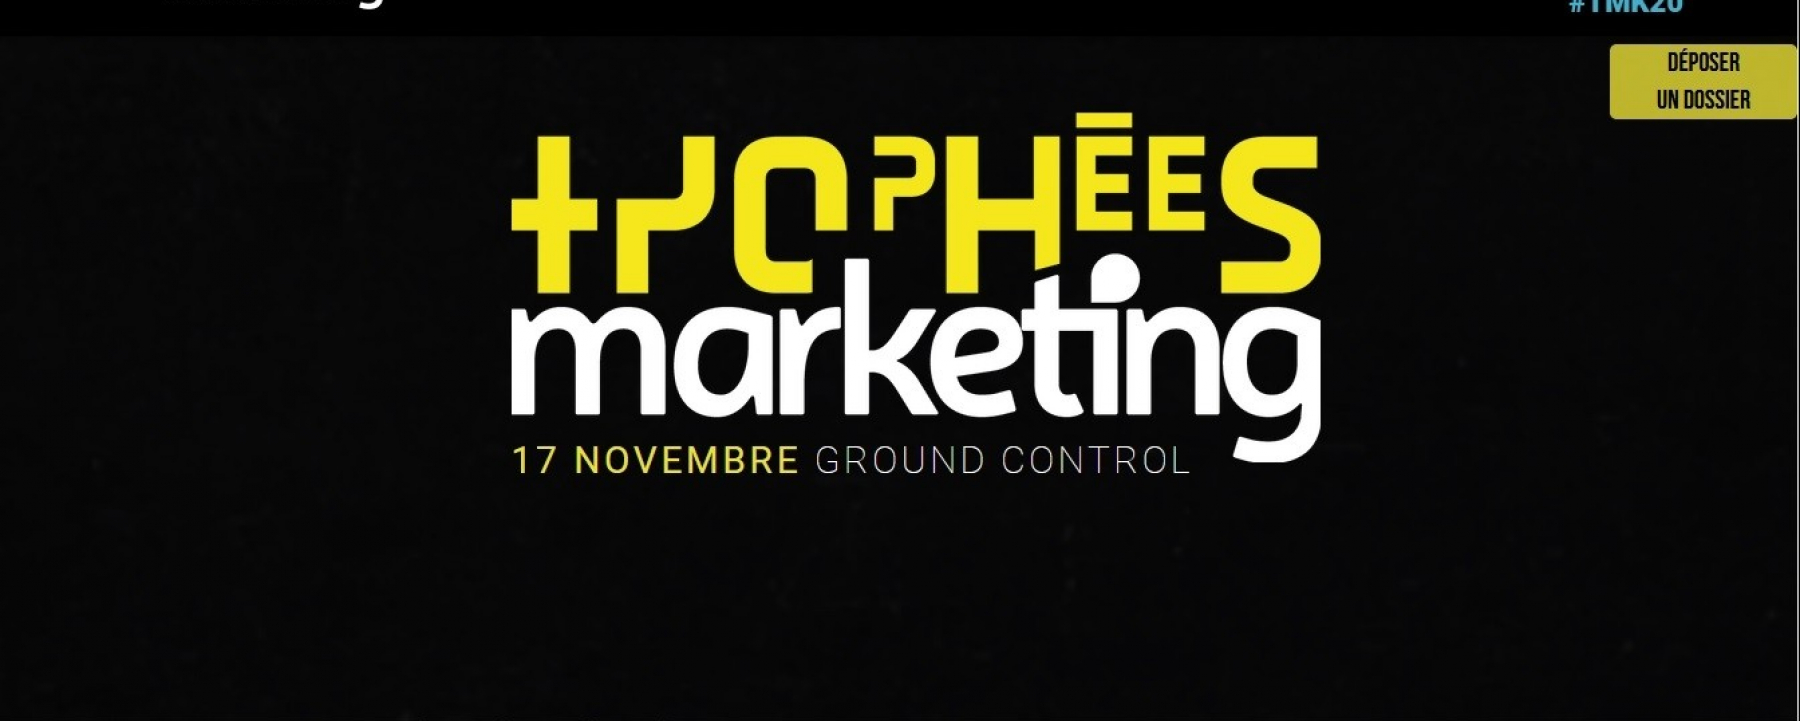 Les trophées marketing, organisé par NetMedia Group le 17 novembre 